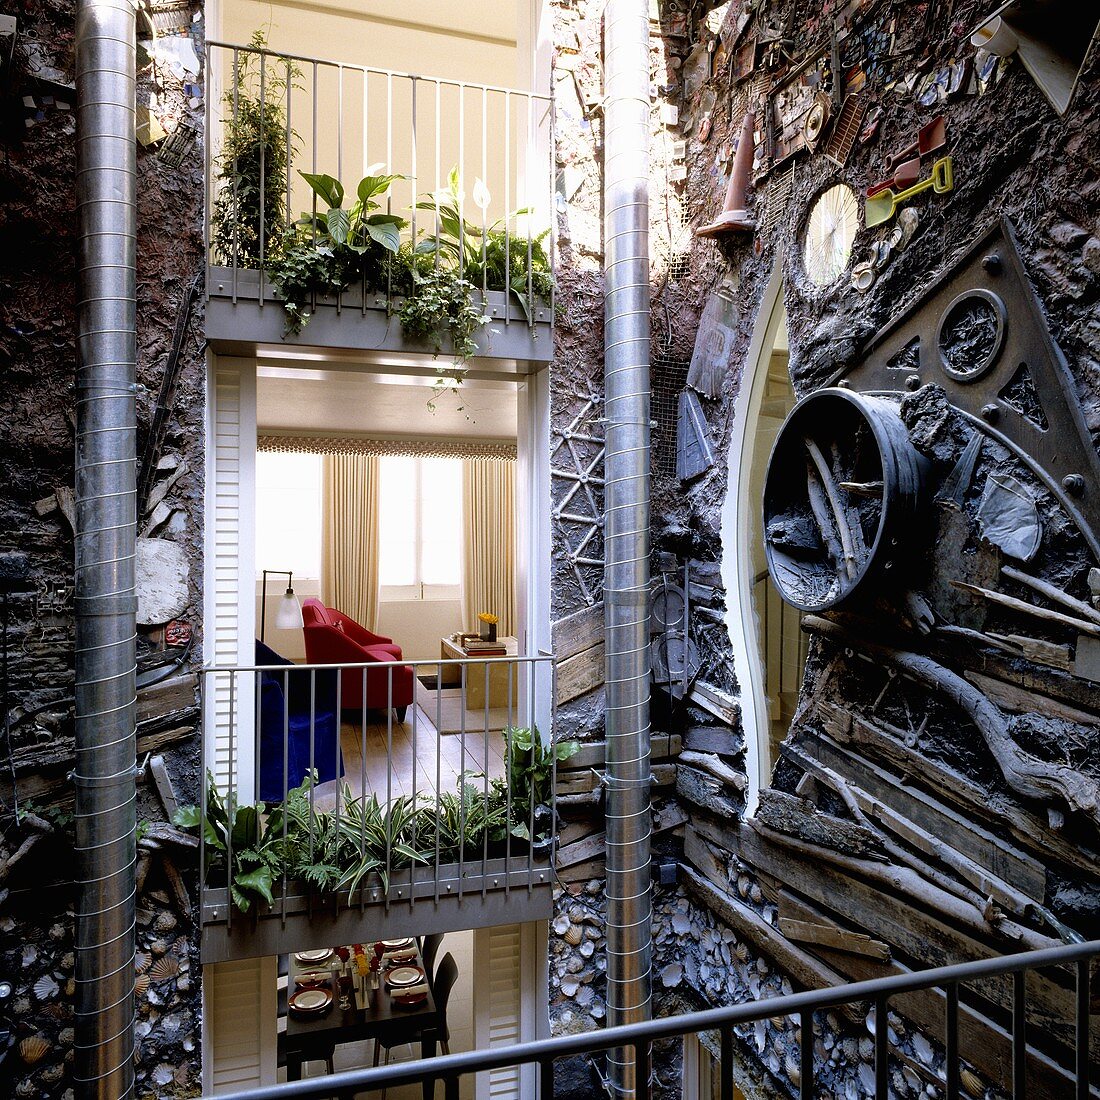 An artistically designed courtyard facade with a view into an apartment